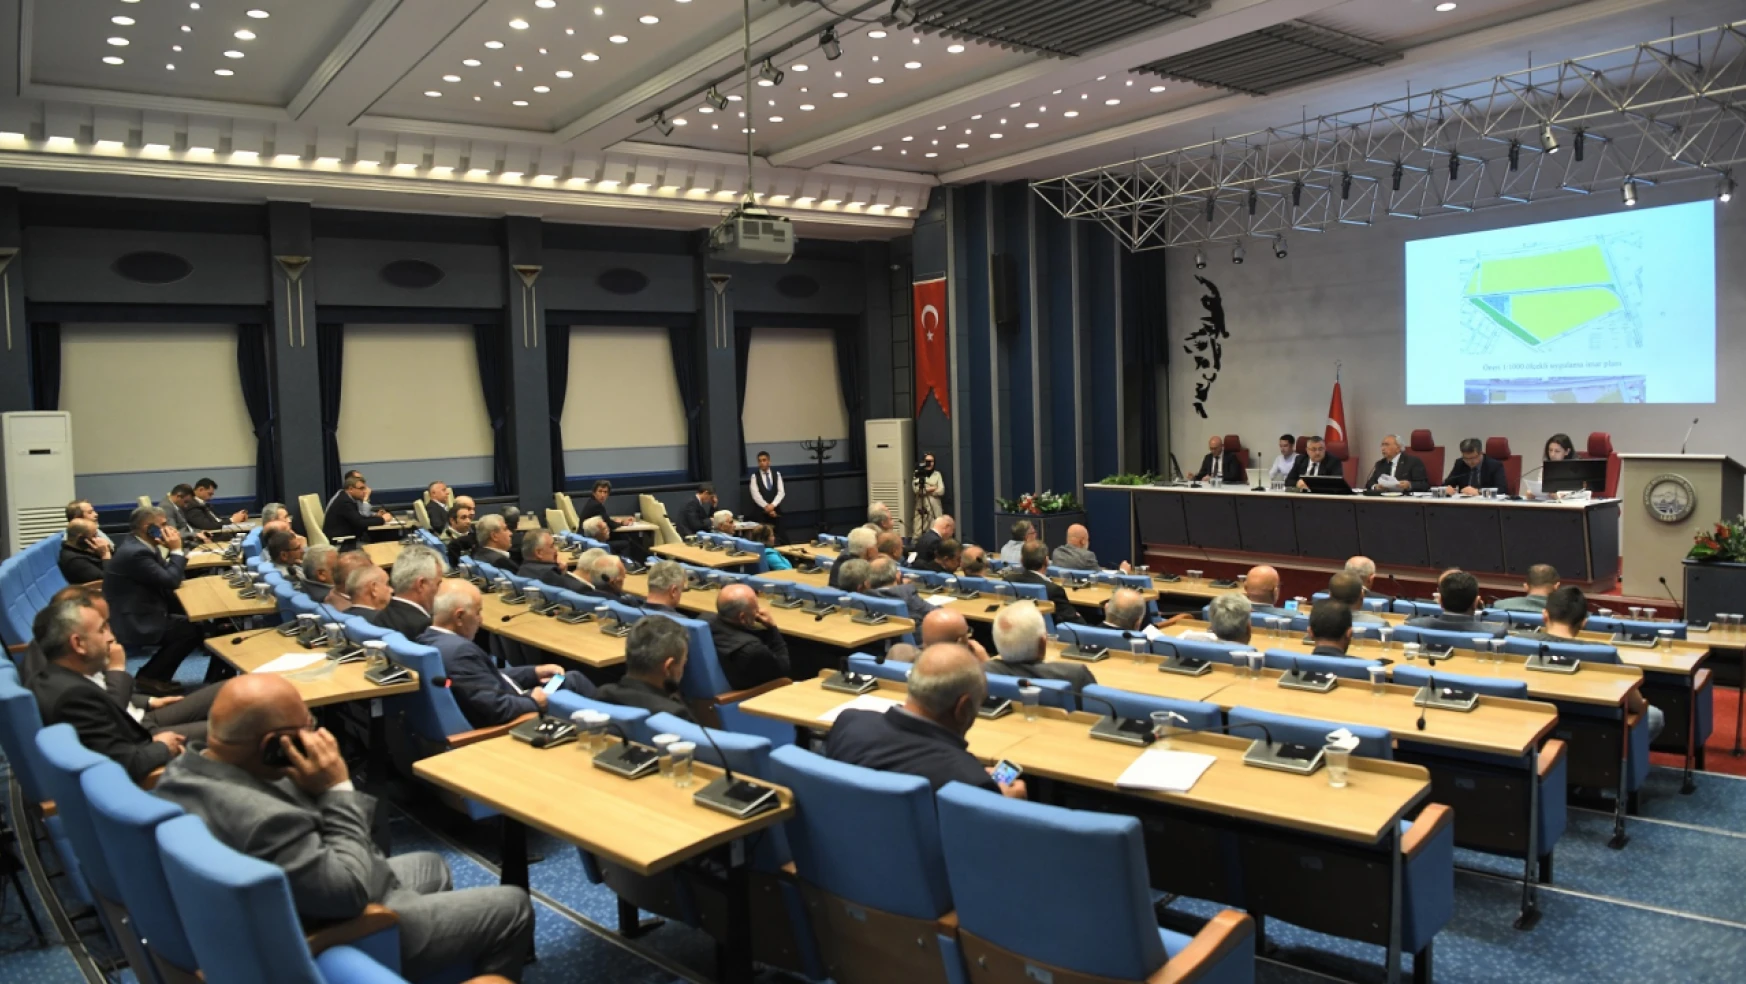 Kayseri Büyükşehir Belediyesinin Meclis üyeleri belli oldu